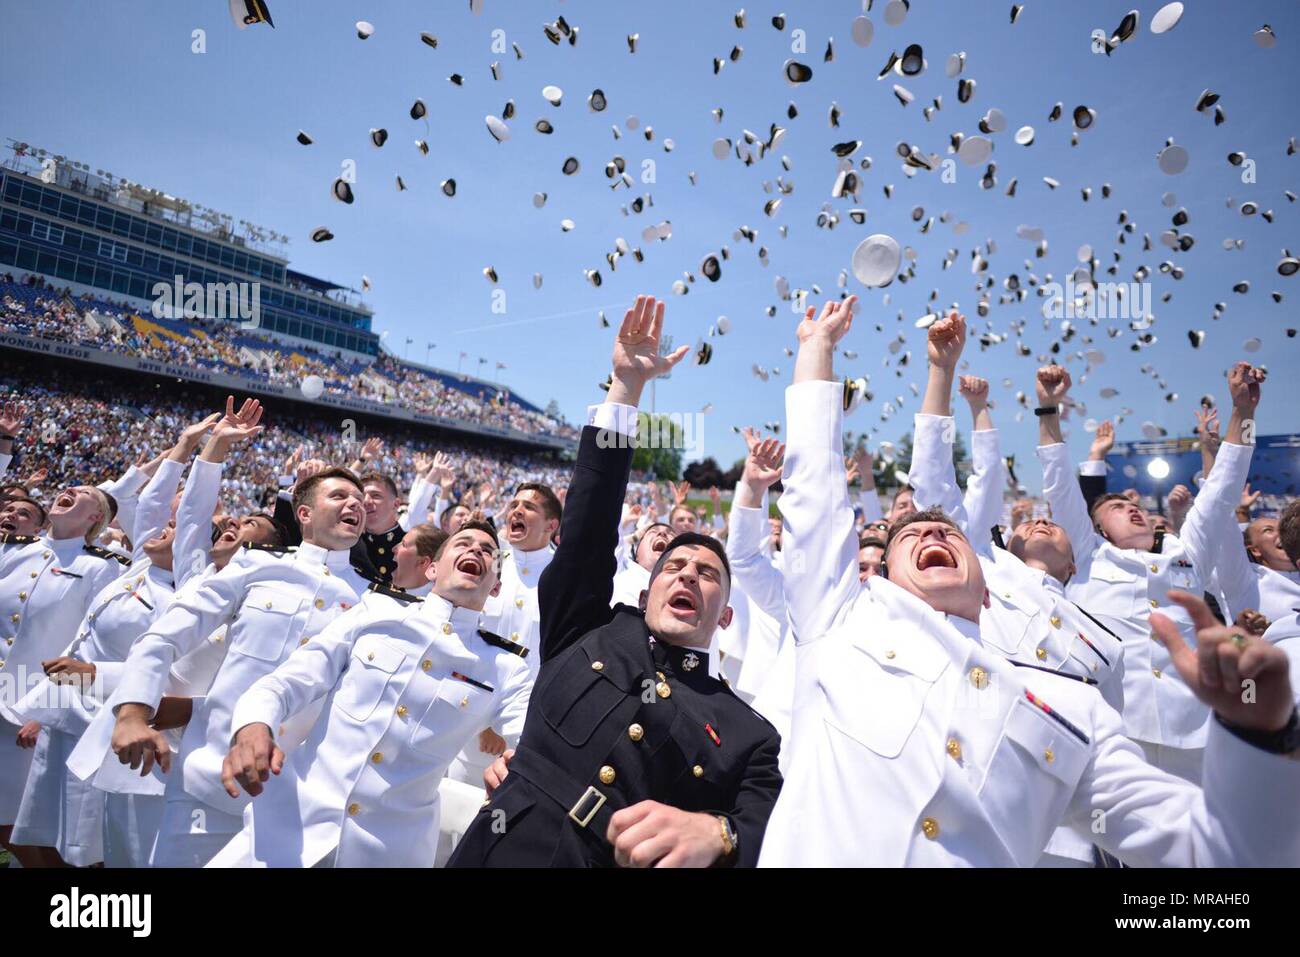 Us Naval Academy Absolventen ihre Hüte in die Luft werfen während der jährlichen Tradition markieren ihre Inbetriebnahme und Staffelung der 25. Mai 2018 in Annapolis, Maryland. Die Klasse von 2018 graduierte 1.042 Midshipmen und wurde von Präsident Donald Trump während der Zeremonie gerichtet. Stockfoto